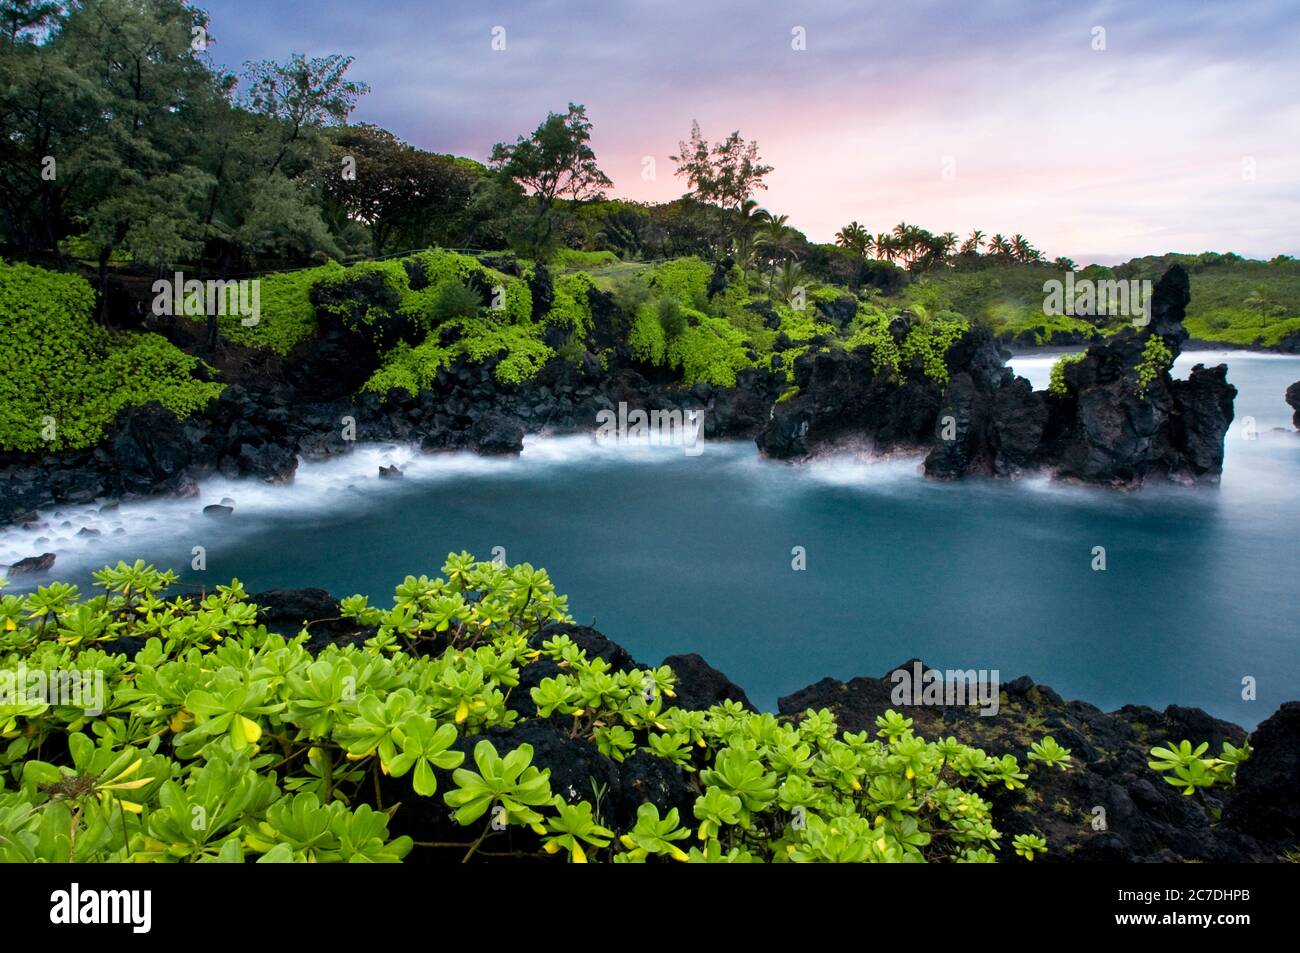 Parco statale Wai'anapanapa. Una posizione verdeggiante con grotte marine e scogliere vulcaniche. HANA Highway. Maui. Hawaii. Questa è una sosta fantastica nella strada per Hana. B Foto Stock